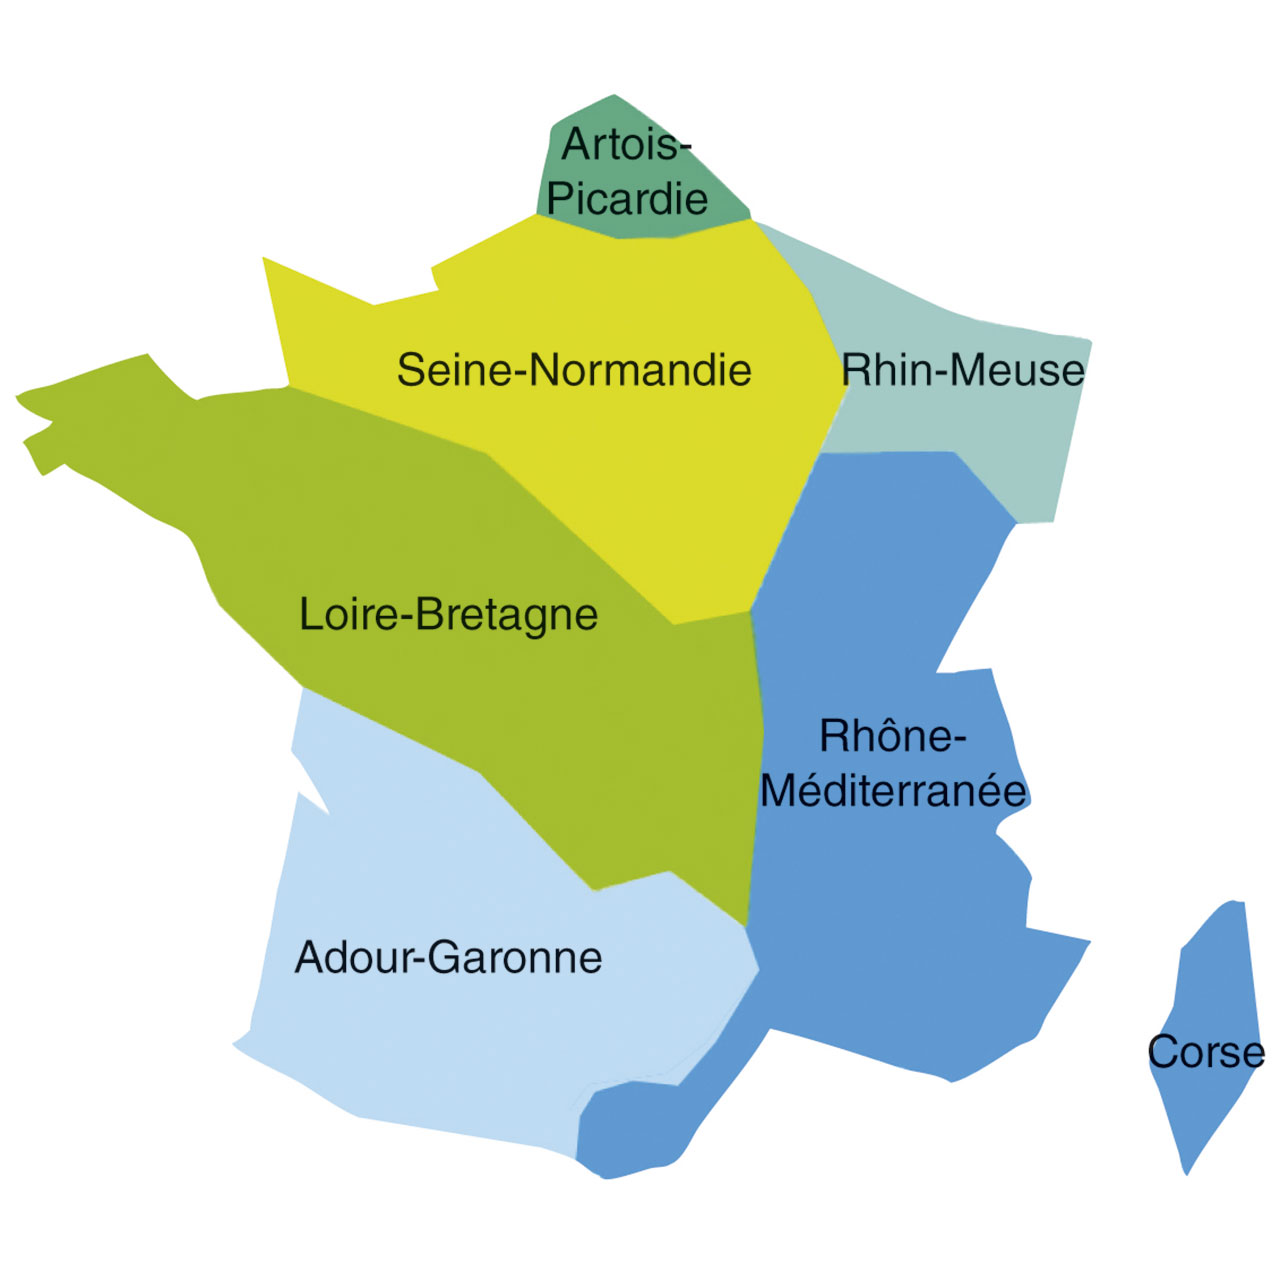 Carte des 6 agences de l'eau en France, qui correspondent aux septs bassins versants : Artois-Picardie, Seine-Normandie, Rhin-Meuse, Loire-Bretagne, Rhône-Méditerranée, Corse, Adour-Garonne